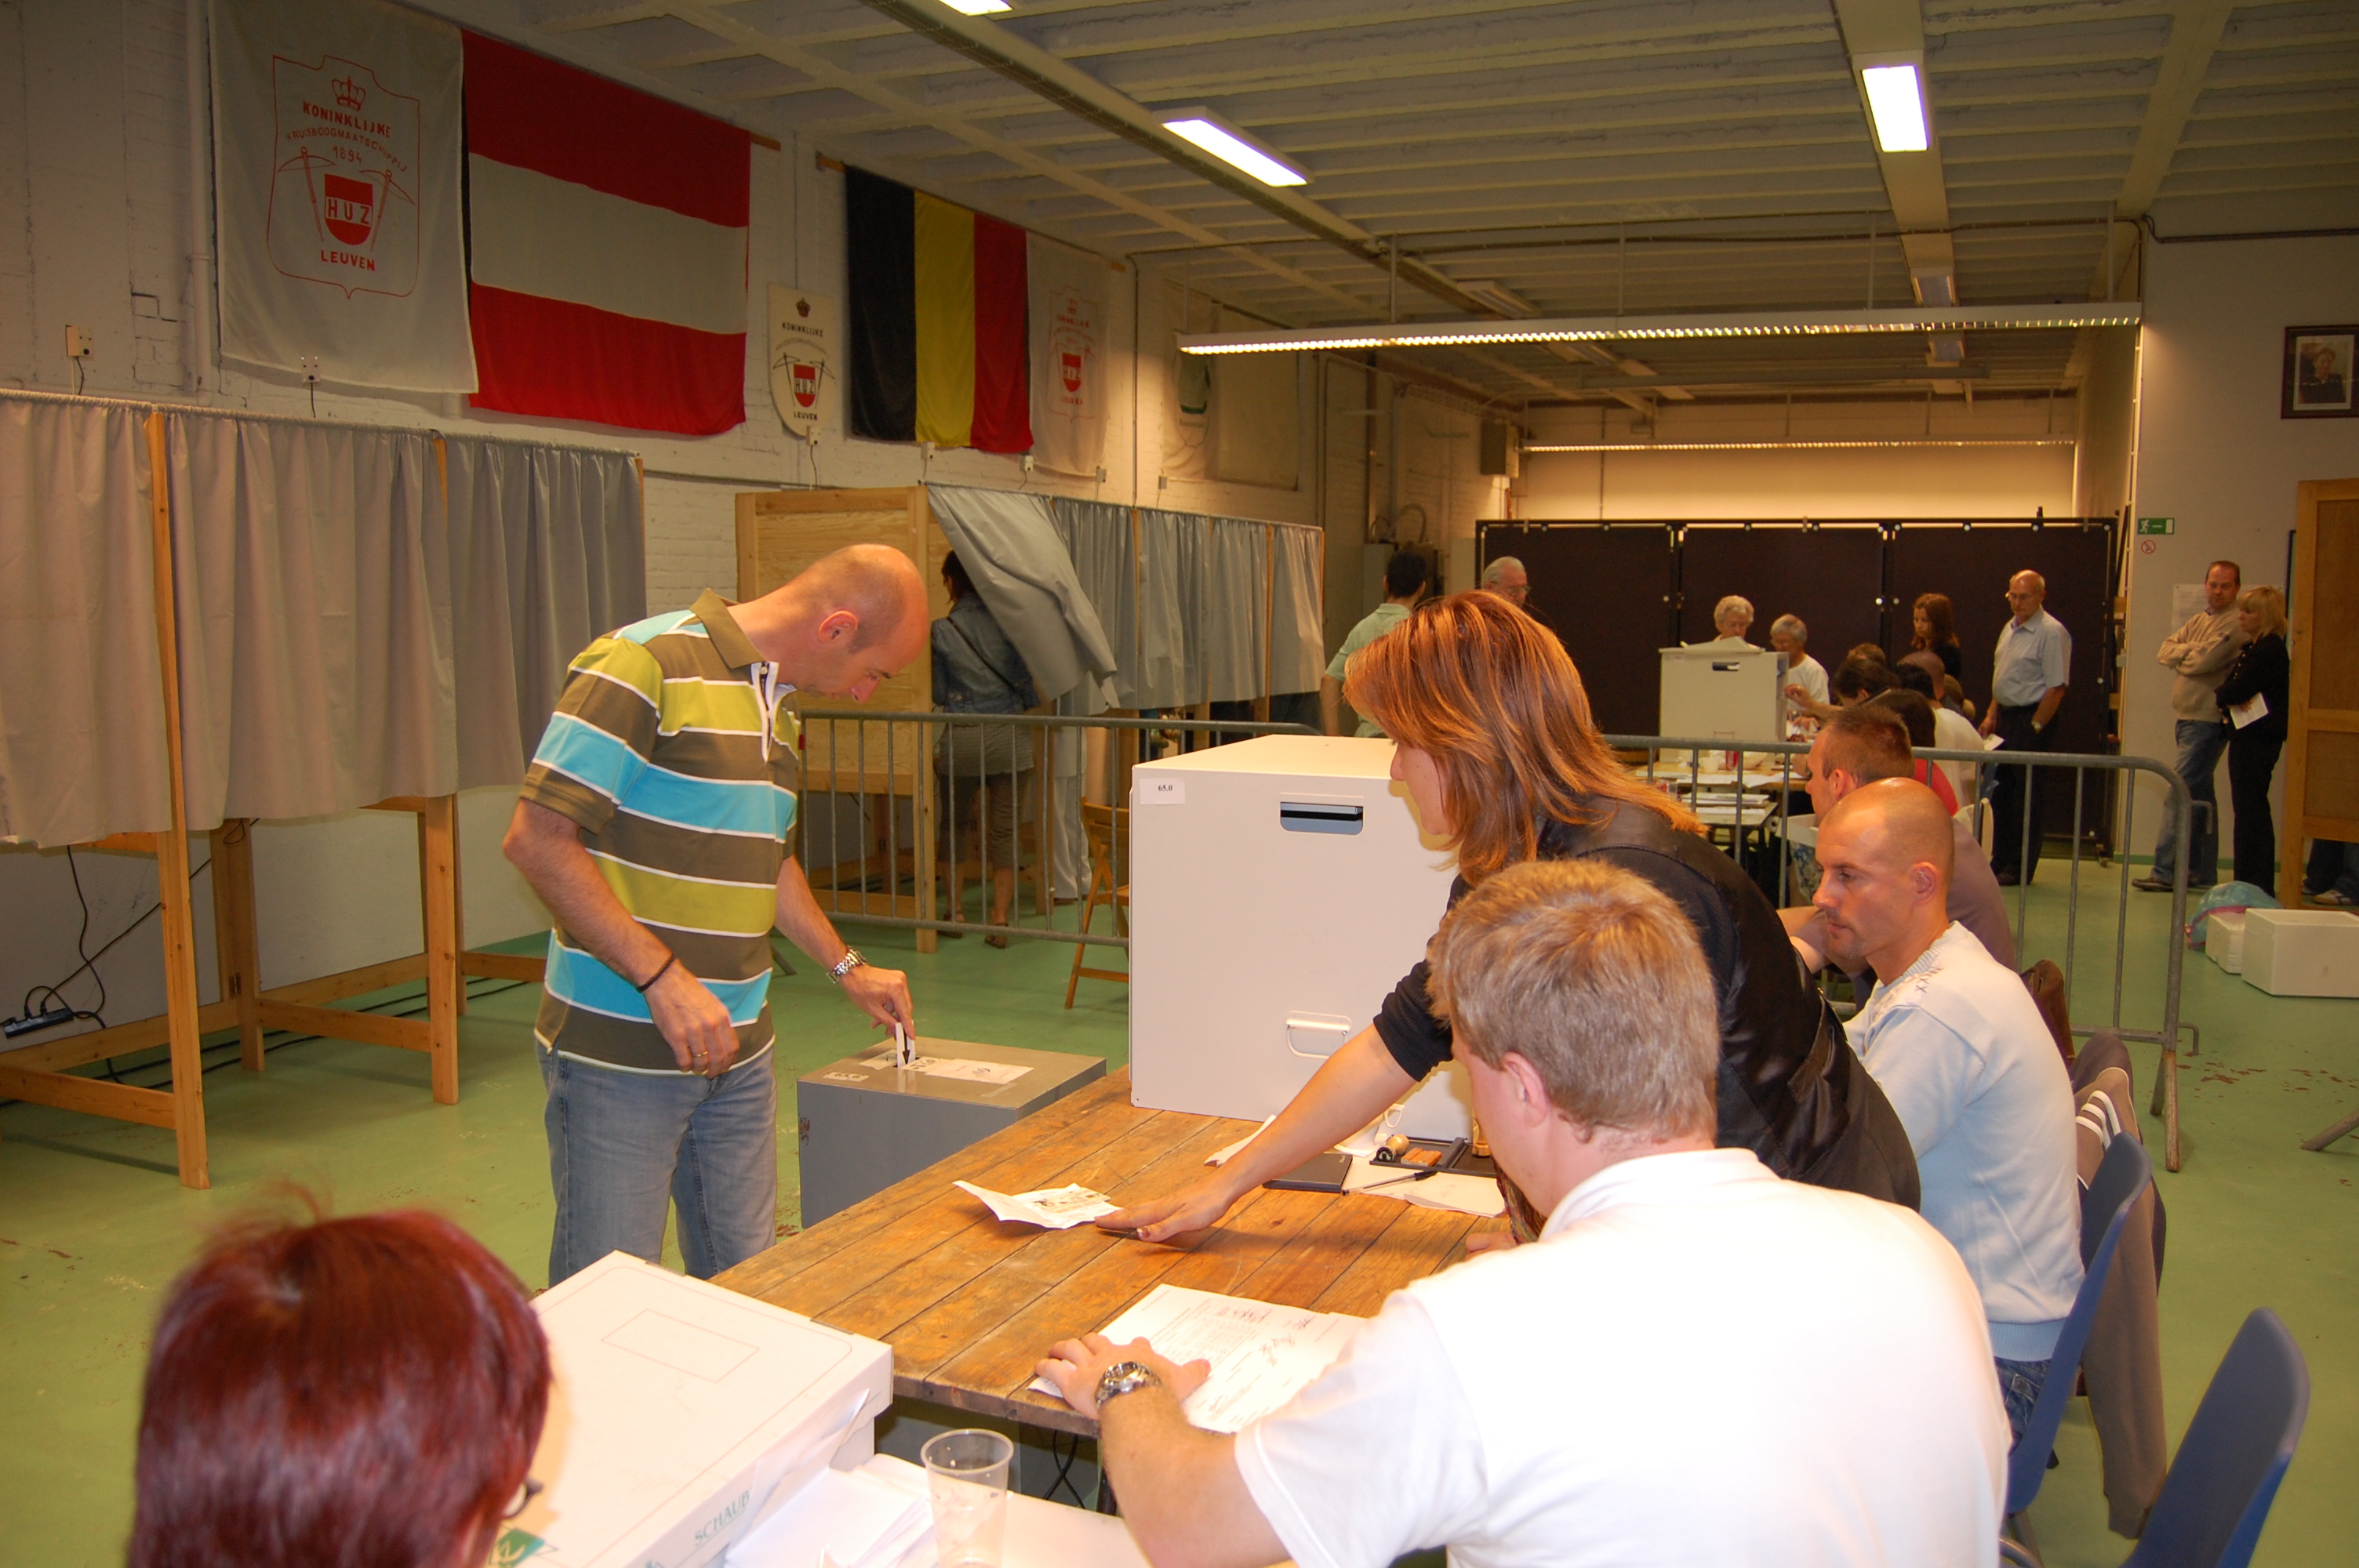 Auf dem Bild ist ein Wahl·lokal in Belgien zu sehen